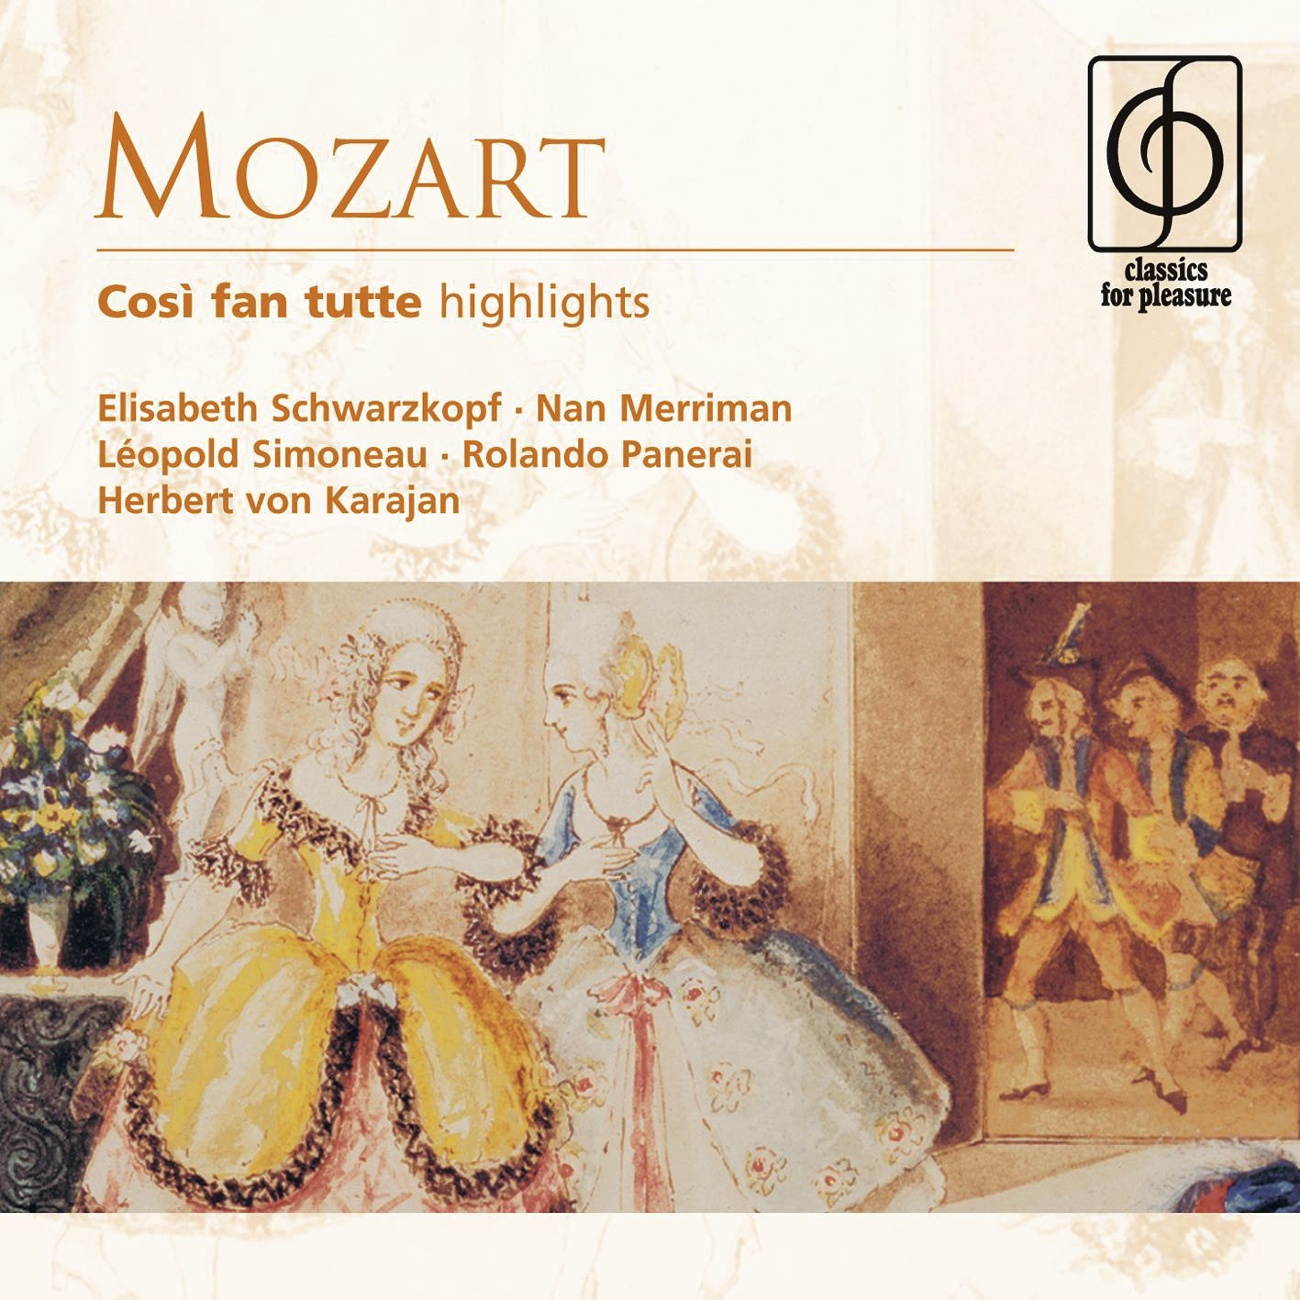 Mozart: Cosi fan tutte highlights